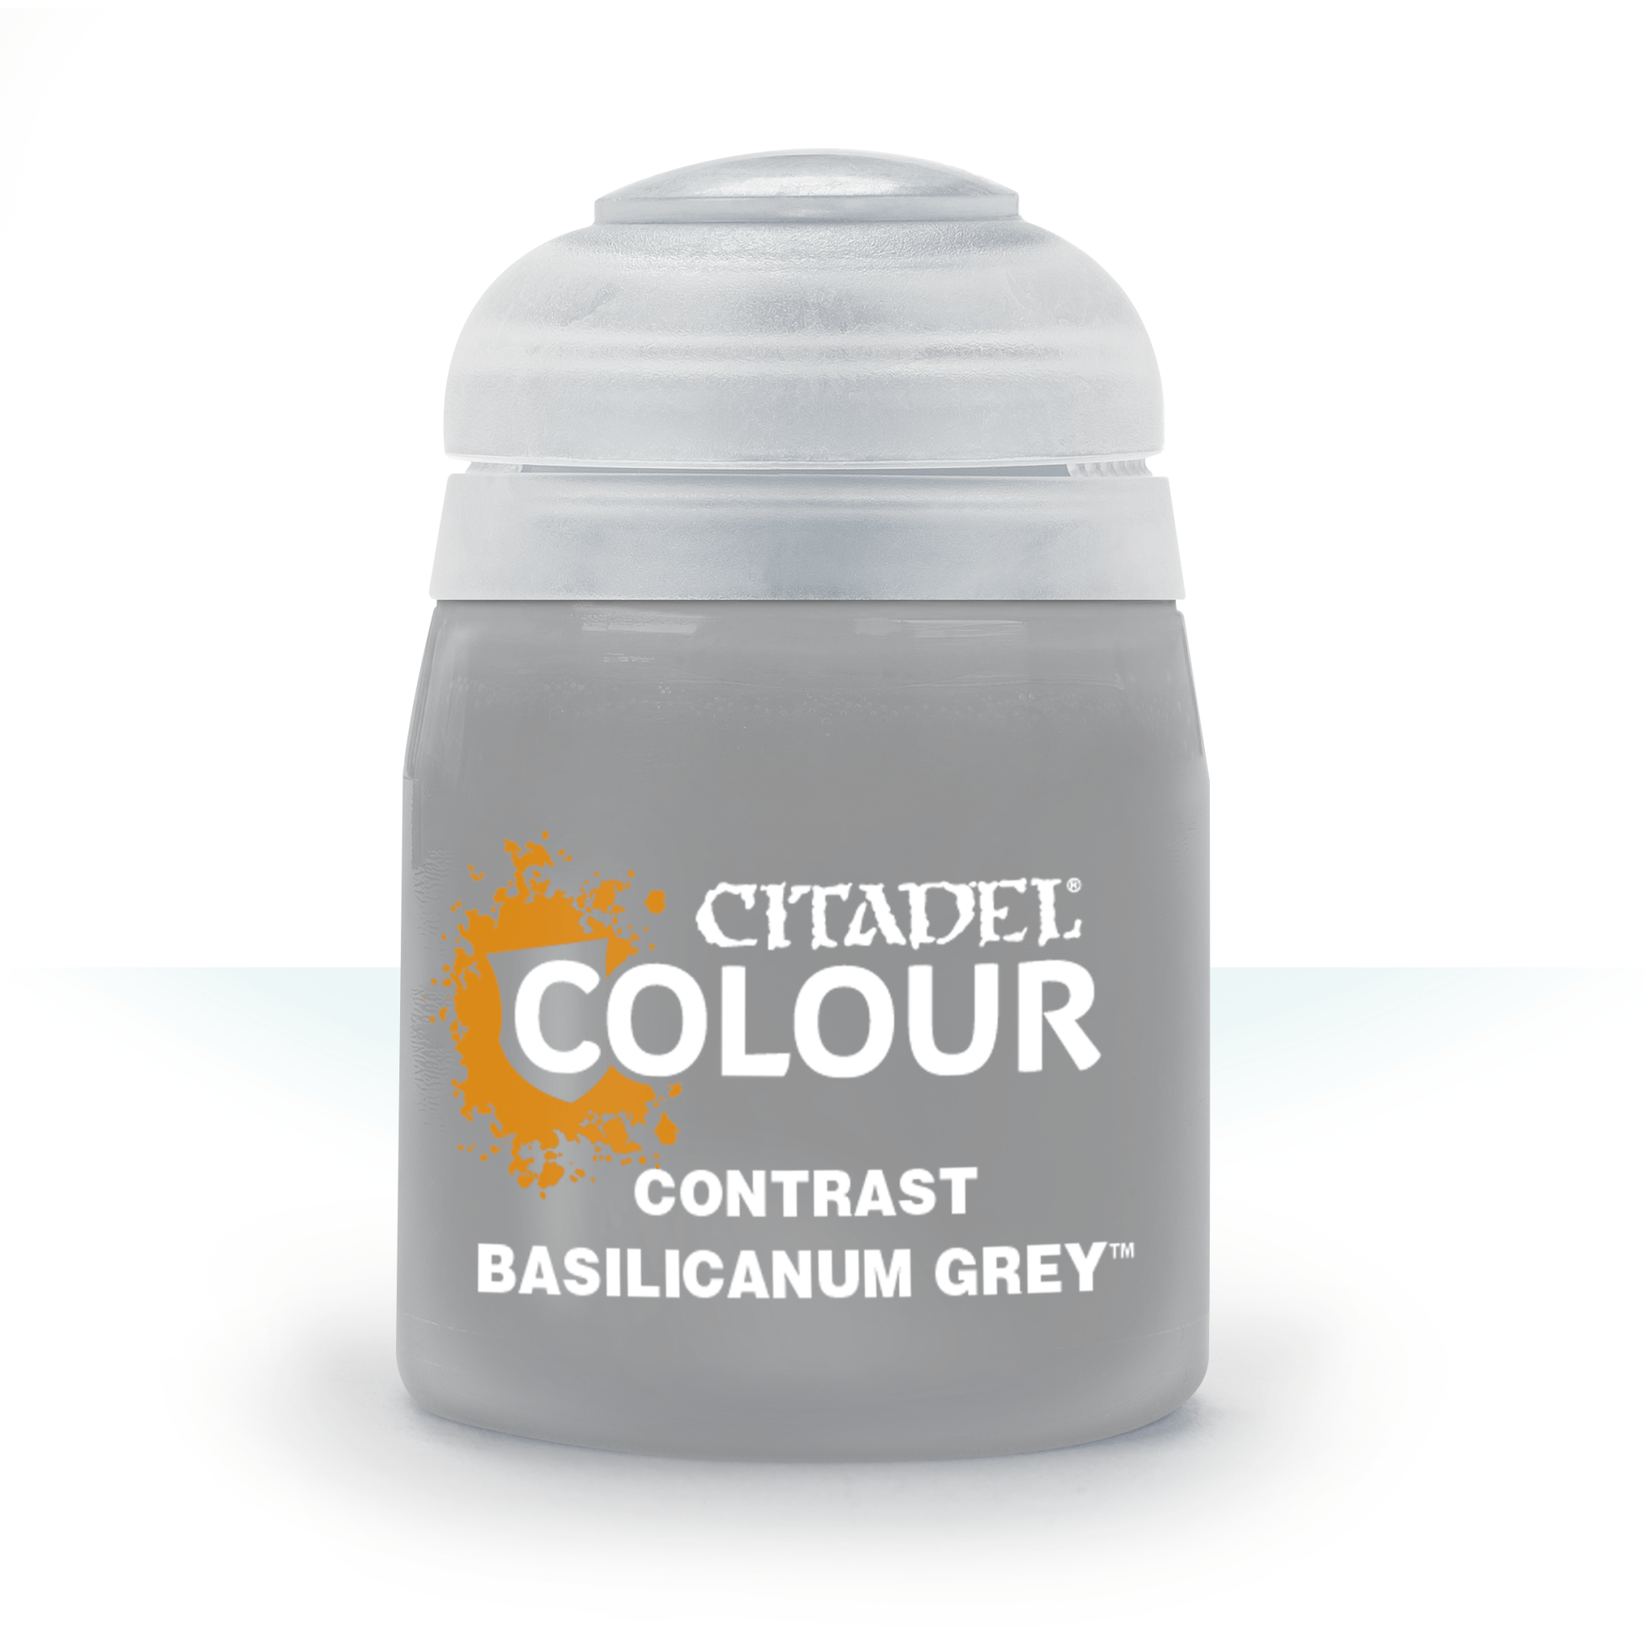 Citadel Contrast Basilicanum Grey 18ml pot